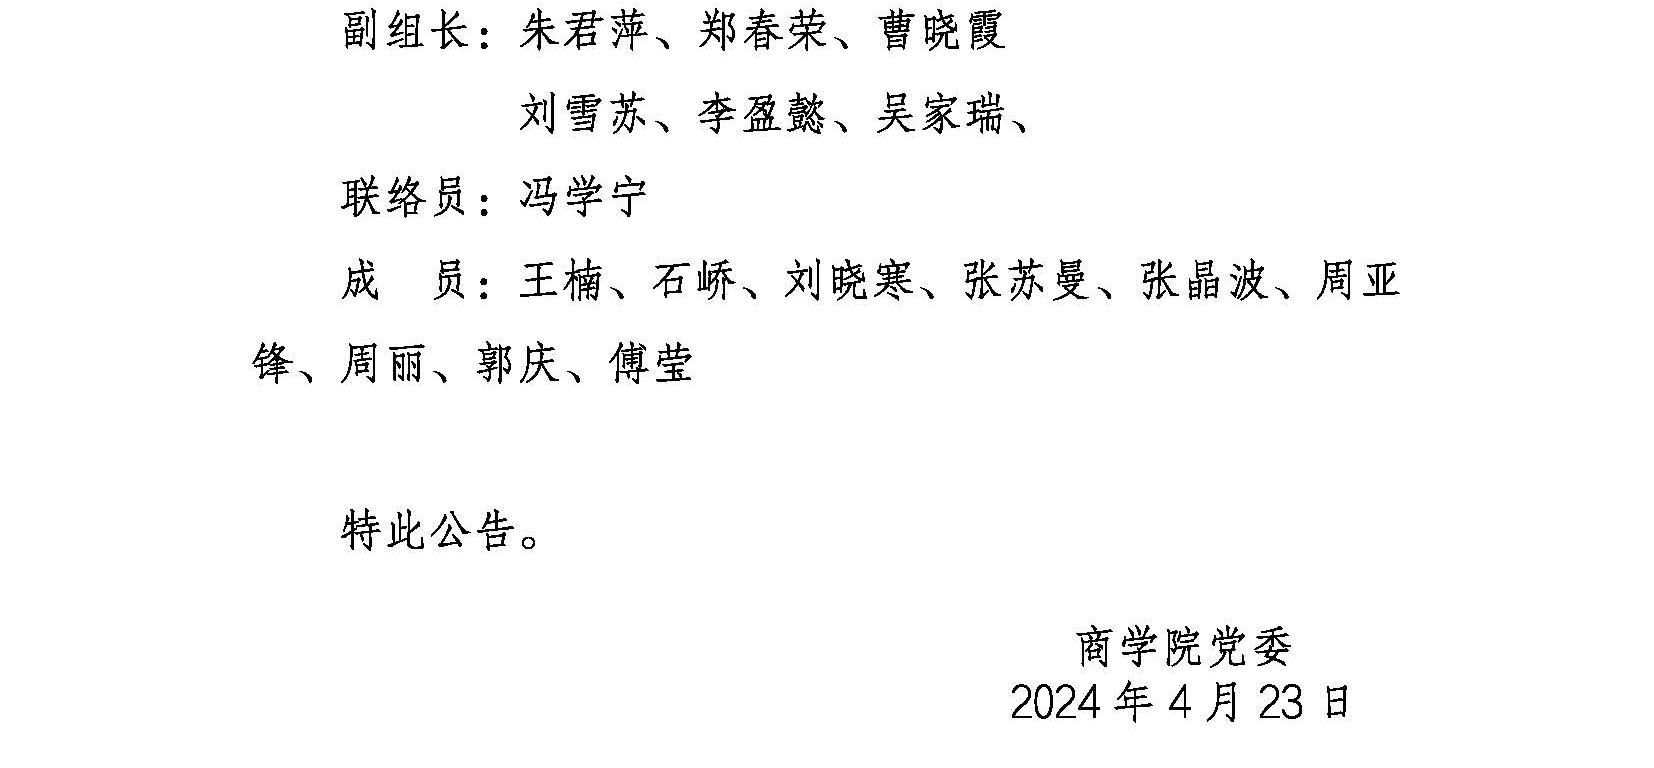 新2体育官网(集团)有限公司党委巡察公告(1)_页面_2.jpg